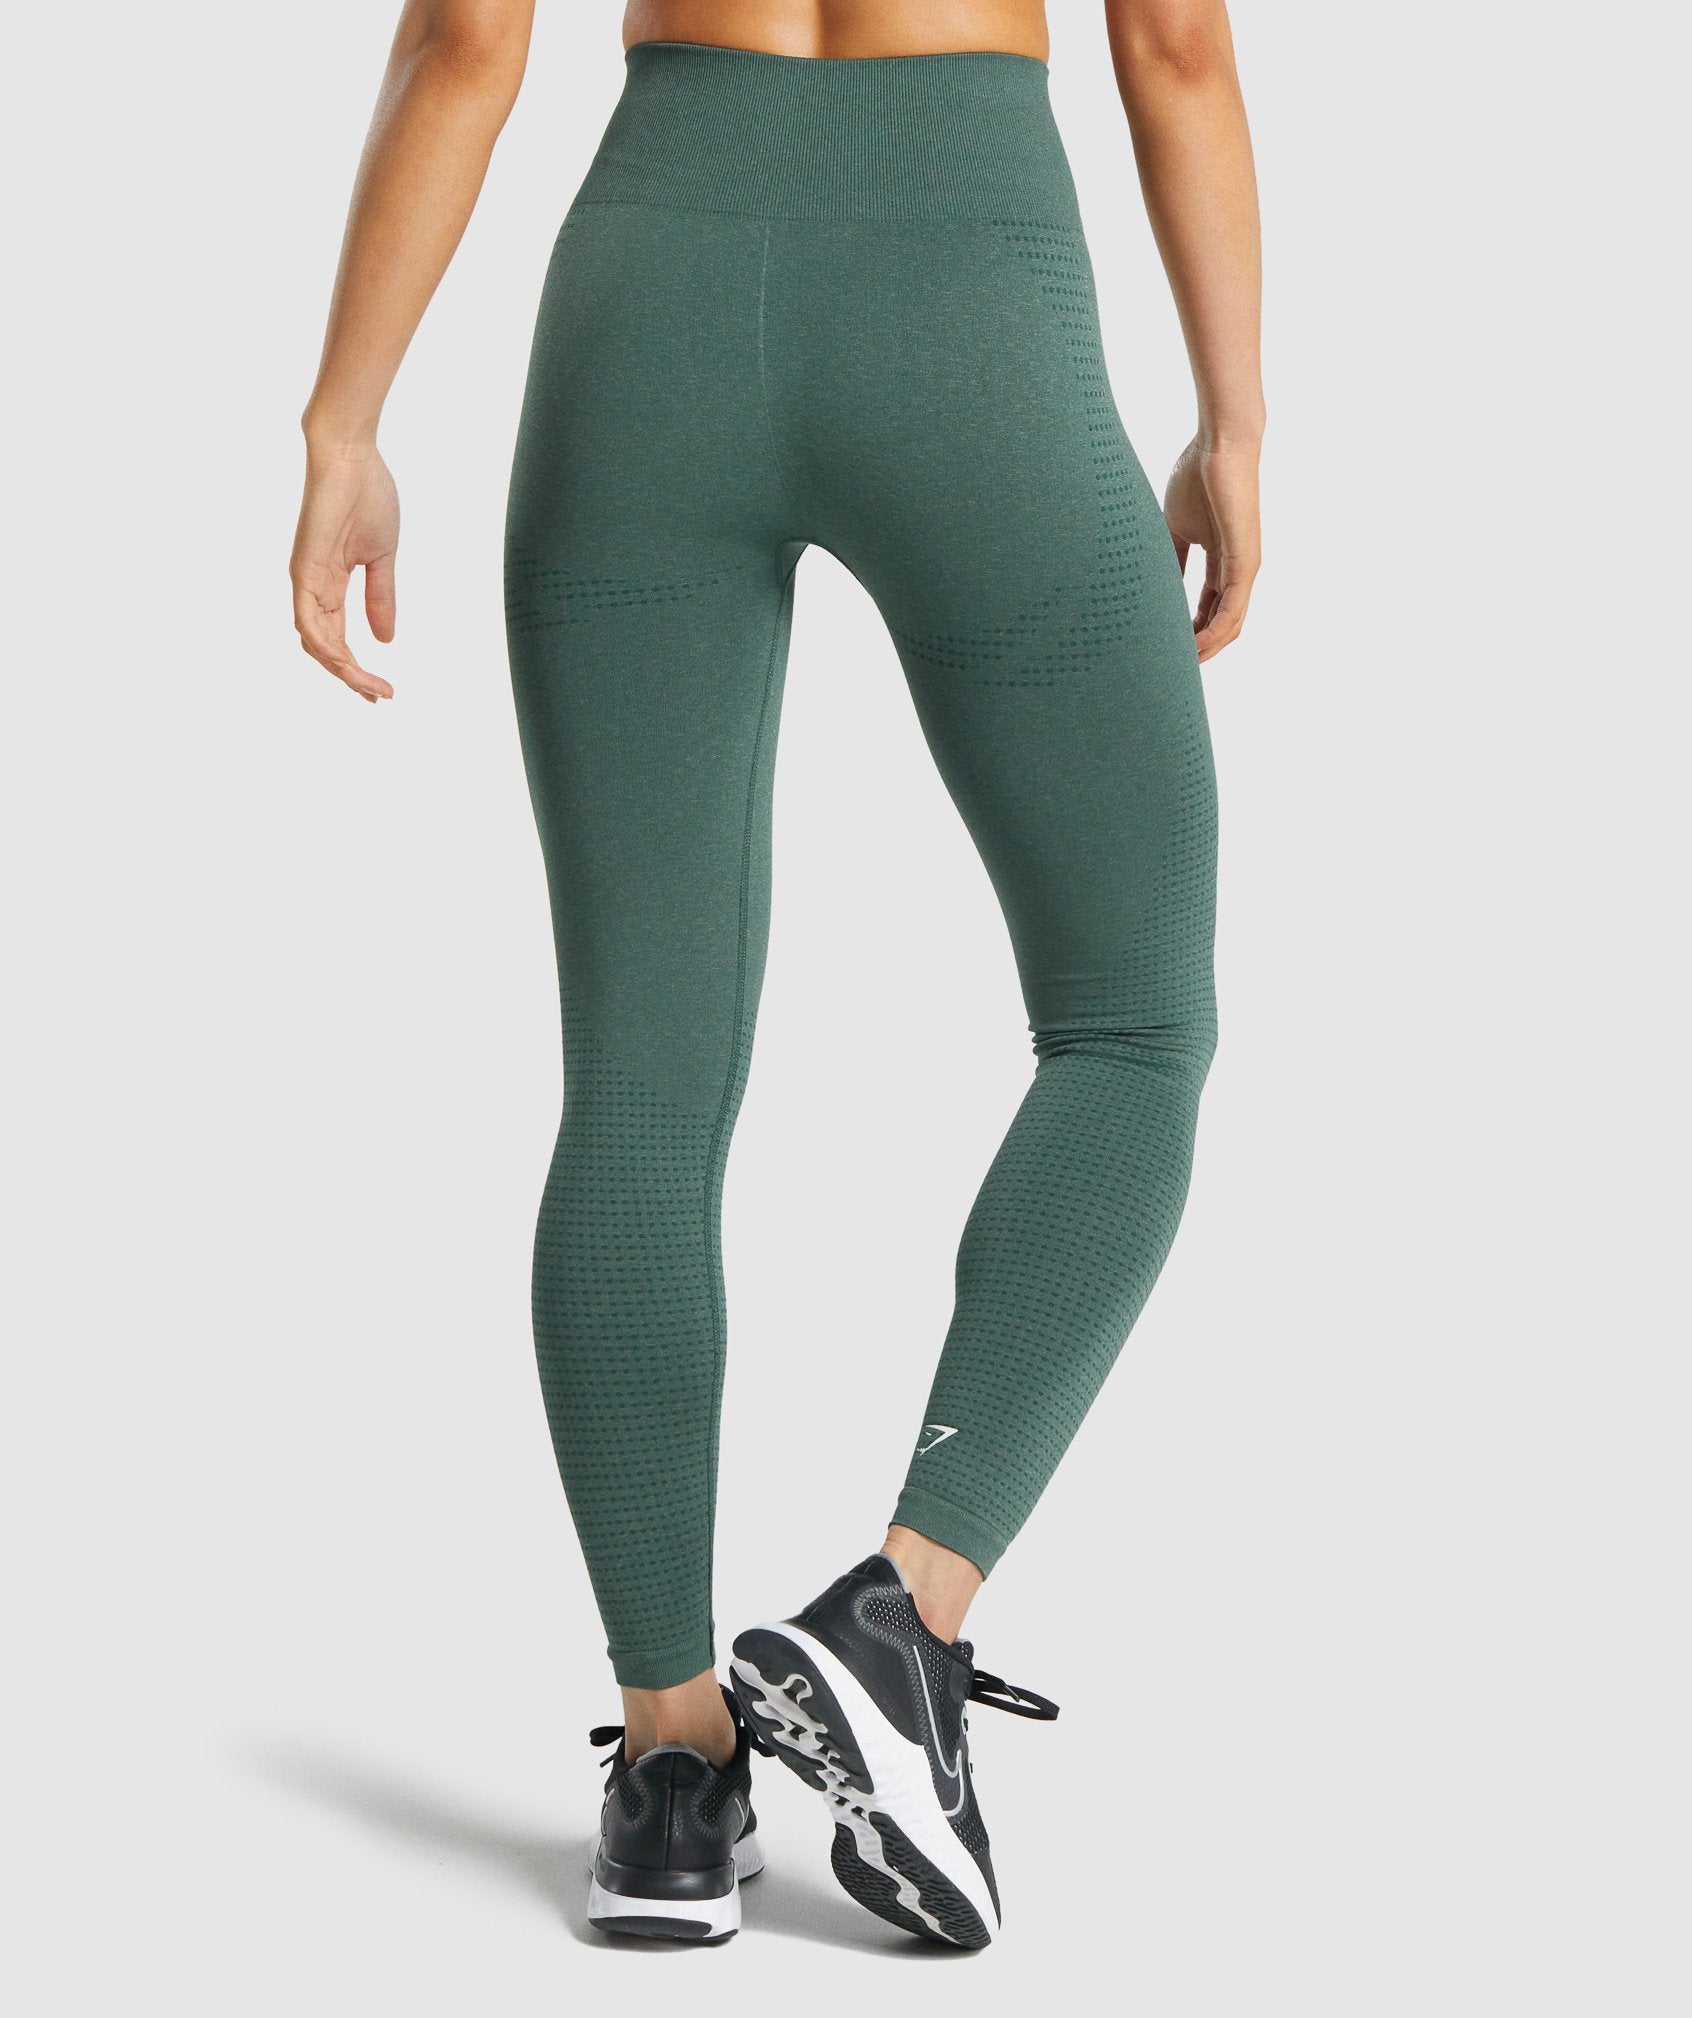 Gymshark Vital Seamless Leggings - Dark Green Marl Size S BRAND NEW